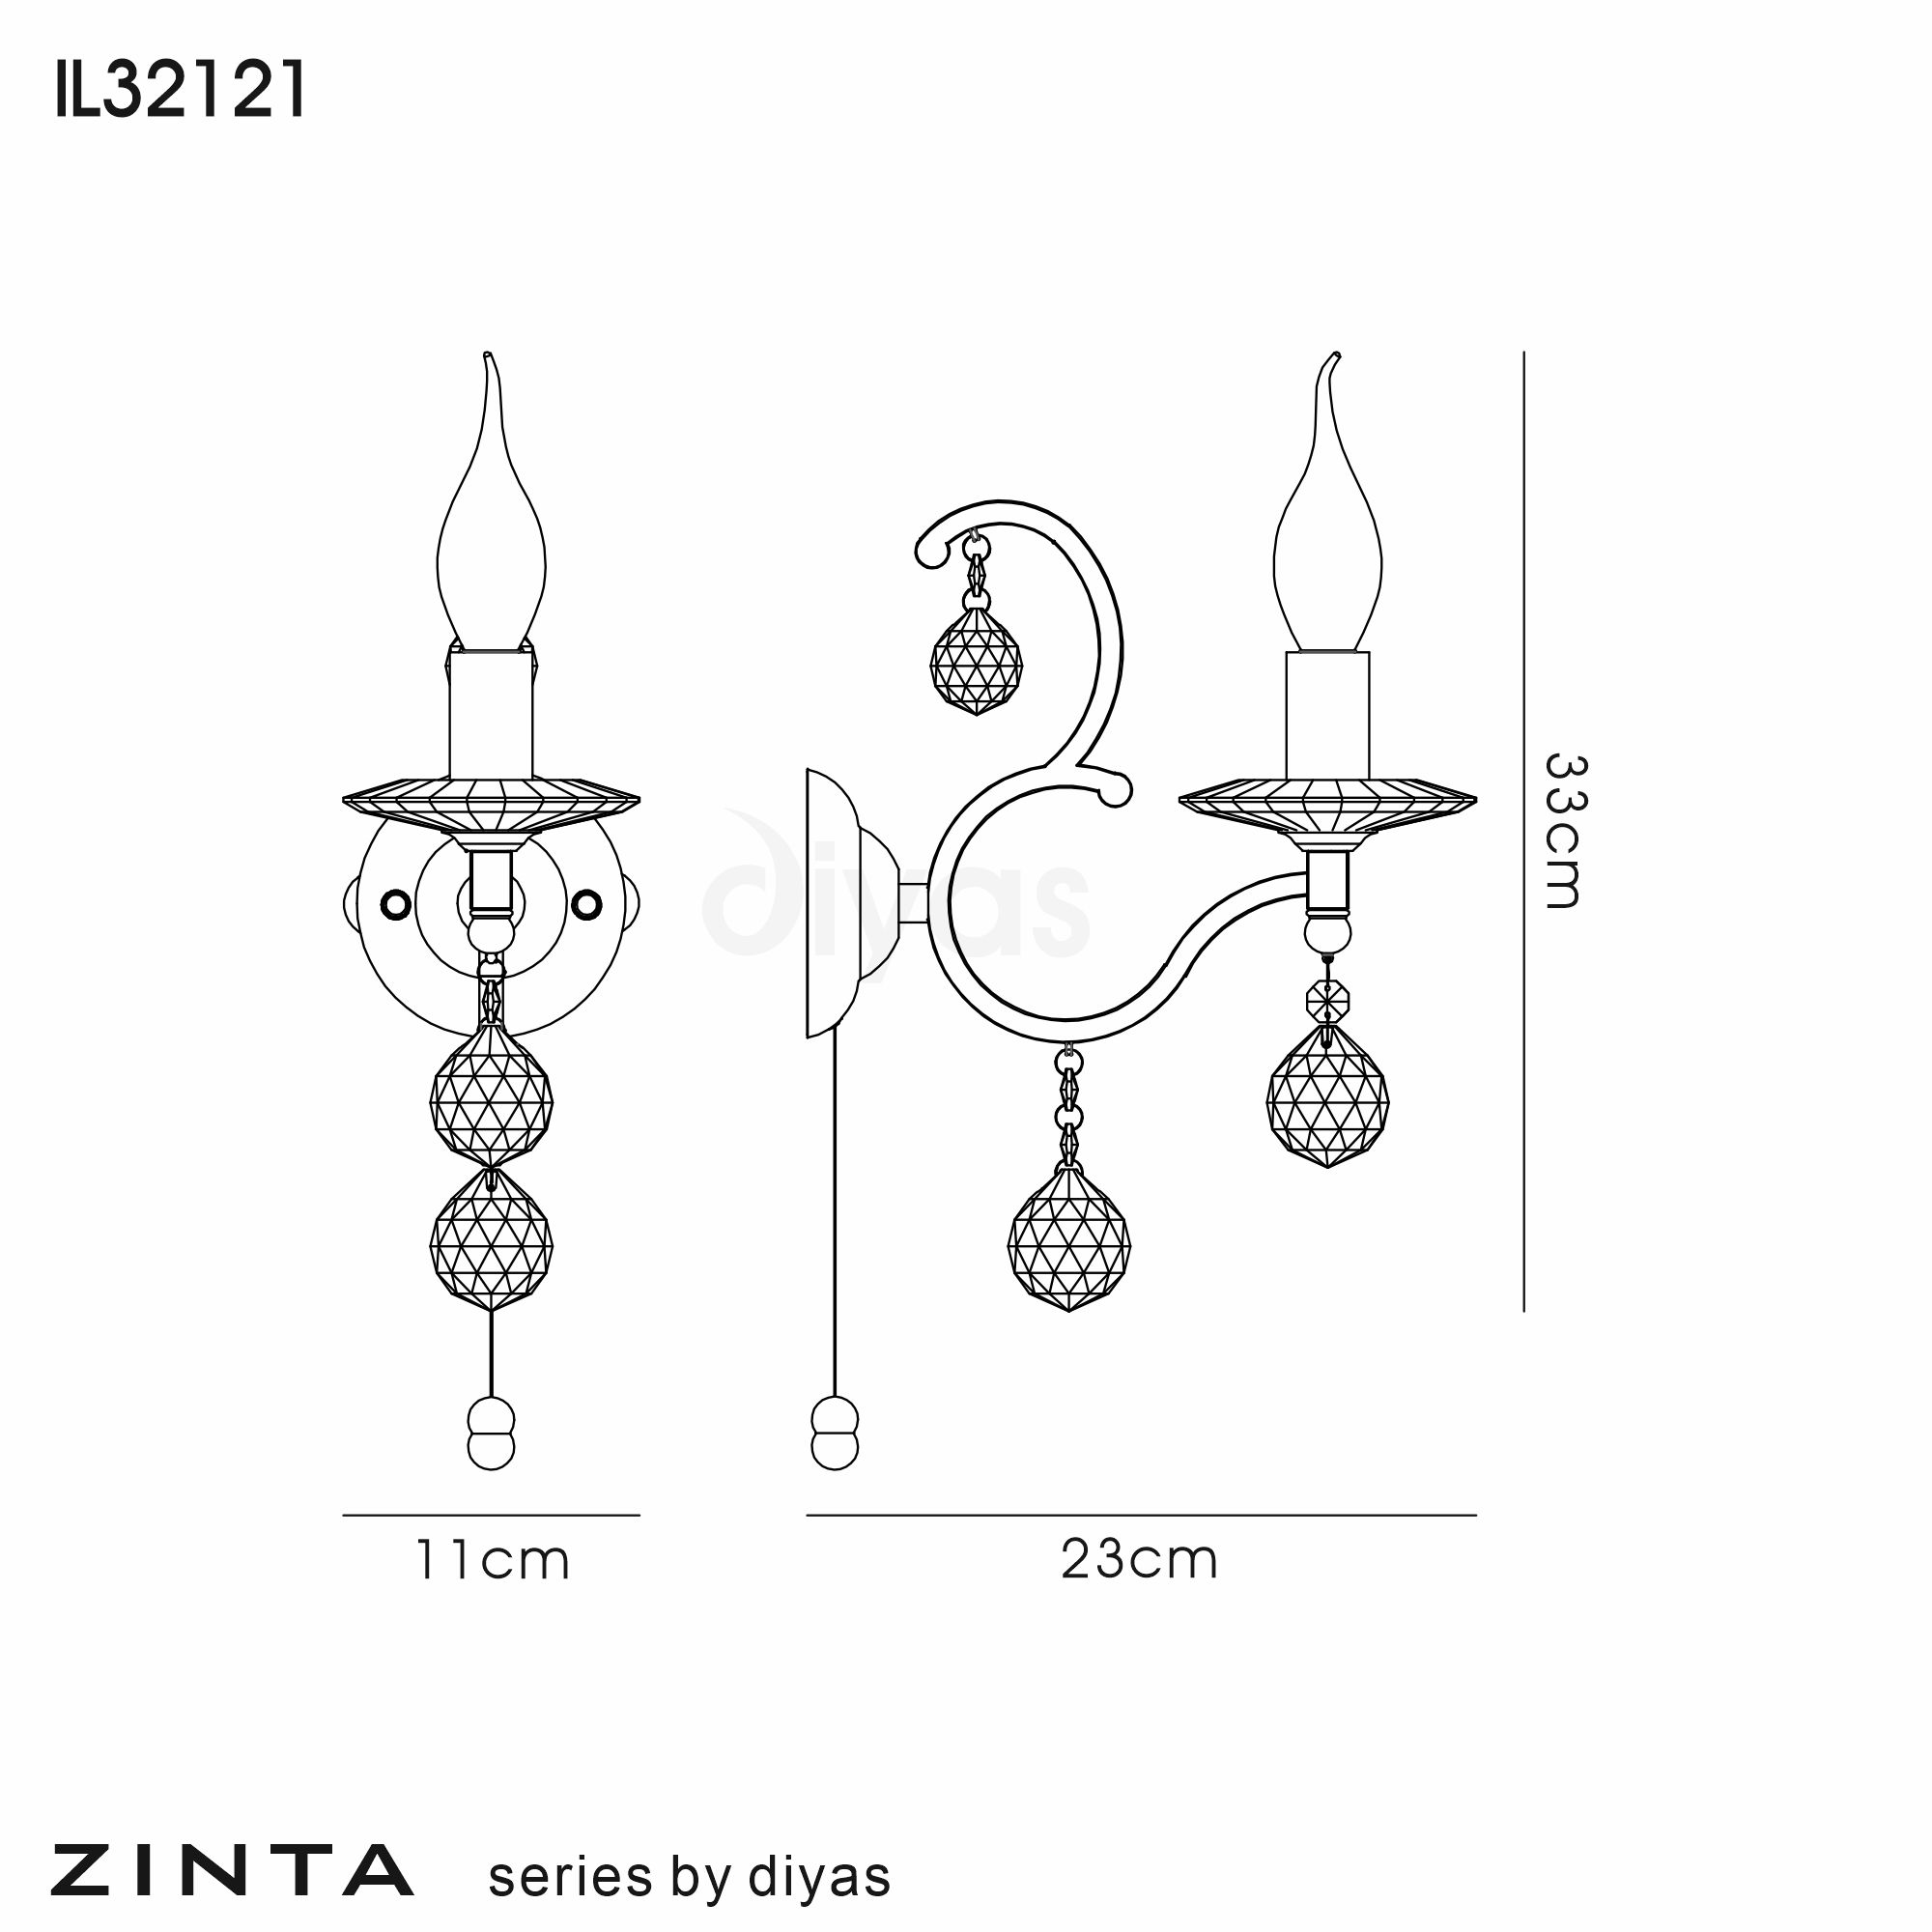 Zinta Antique Brass Crystal Wall Lights Diyas Armed Wall Lights